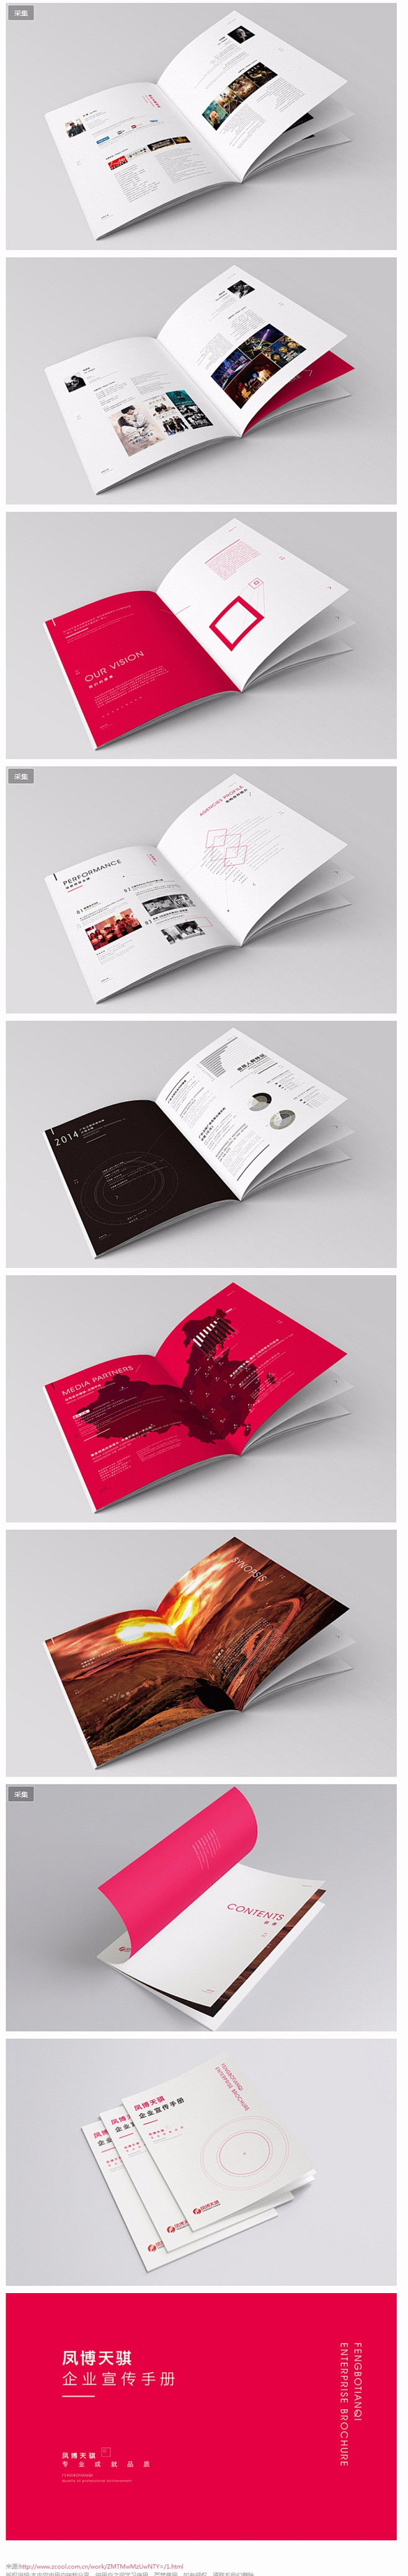 企业宣传画册手册设计欣赏 - 视觉中国设...